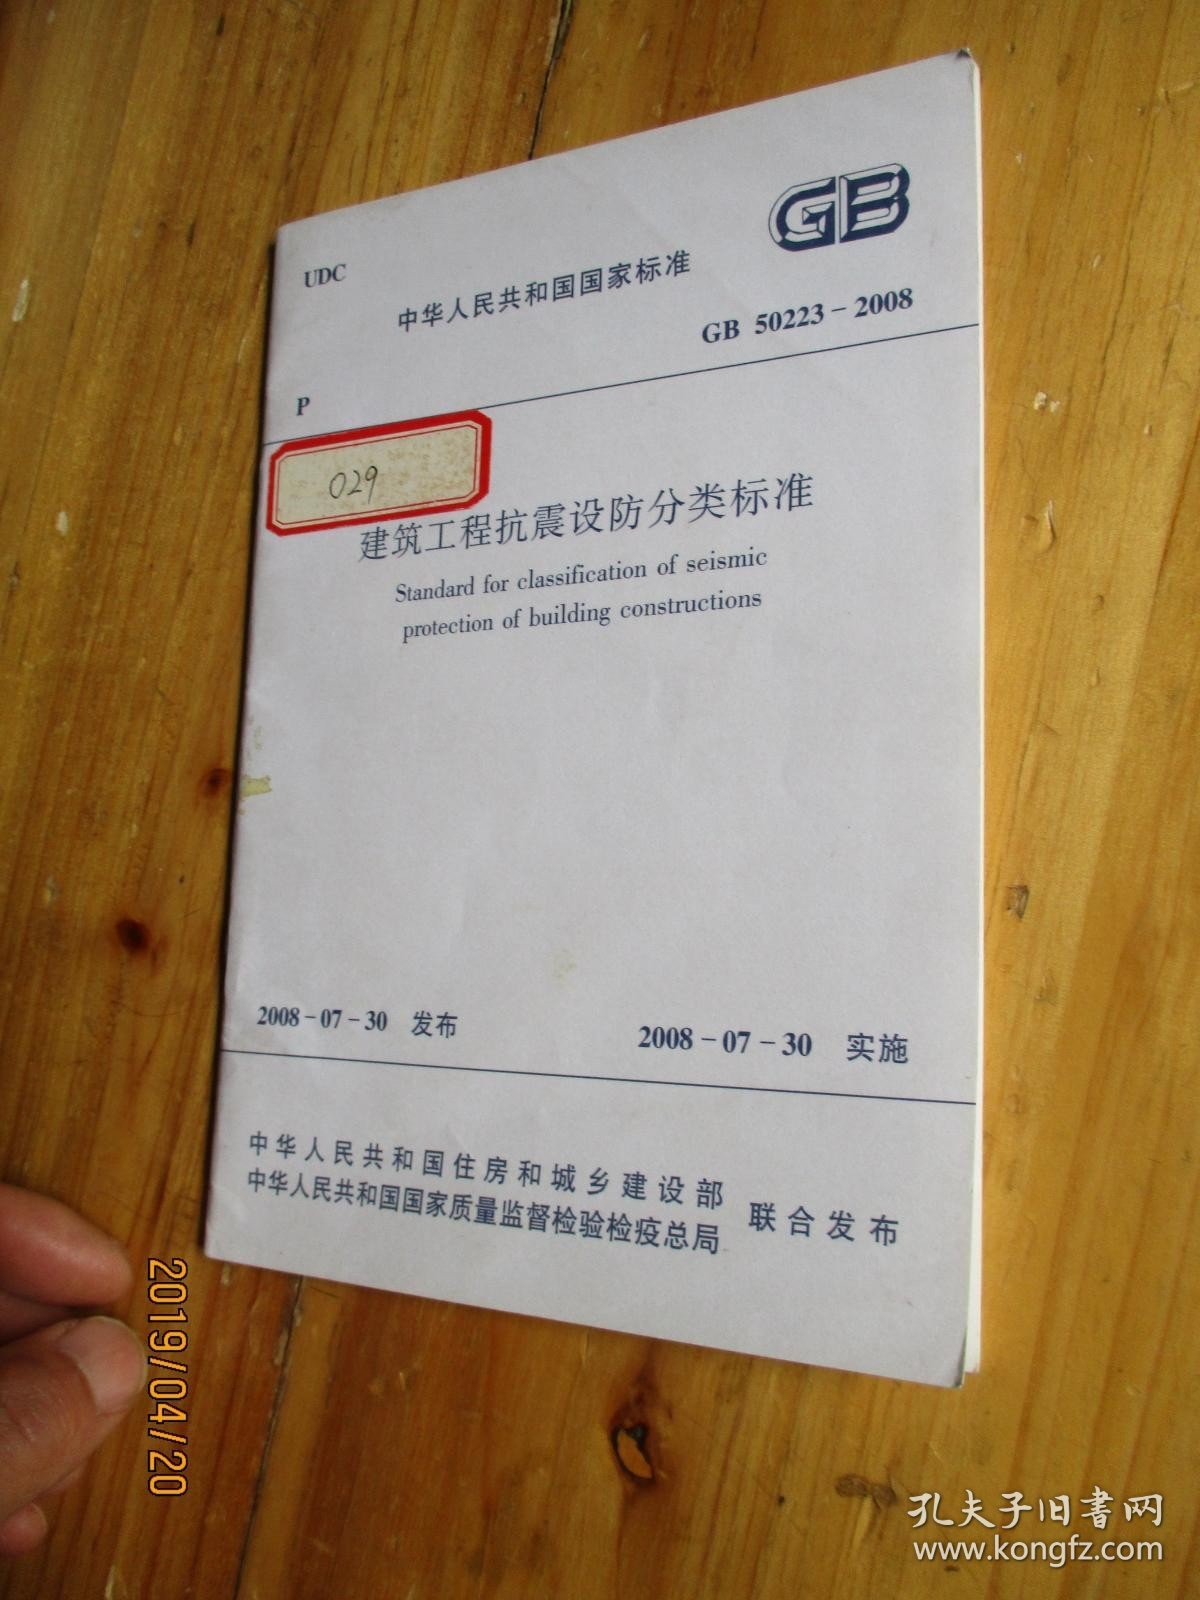 中华人民共和国国家标准 GB 50233-2008 建筑工程抗震设防分类标准【如图72-2